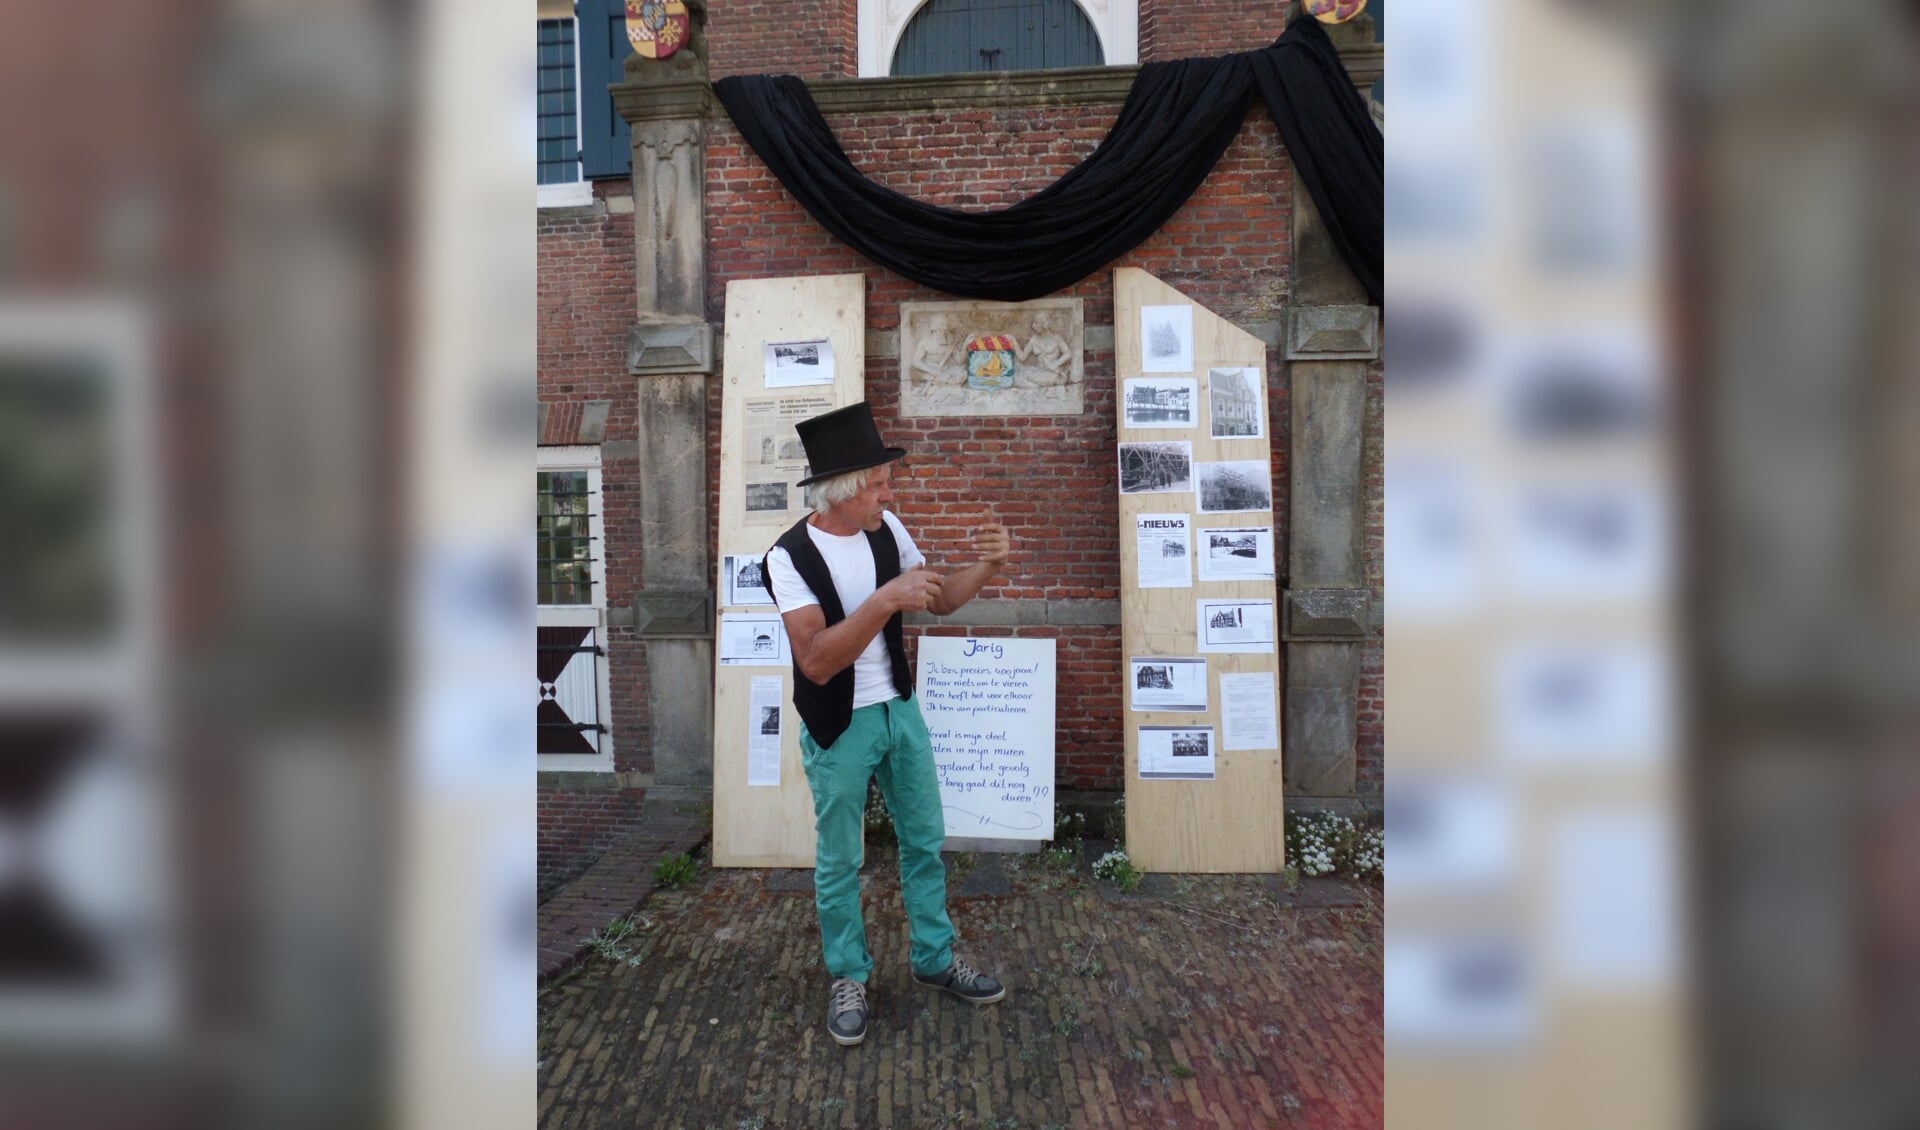 Ton Korteweg op een archieffoto tijdens Monumentendag in 2013 waar hij een pleidooi houdt voor het behoud van het oude Raadhuis in Ooltgensplaat.